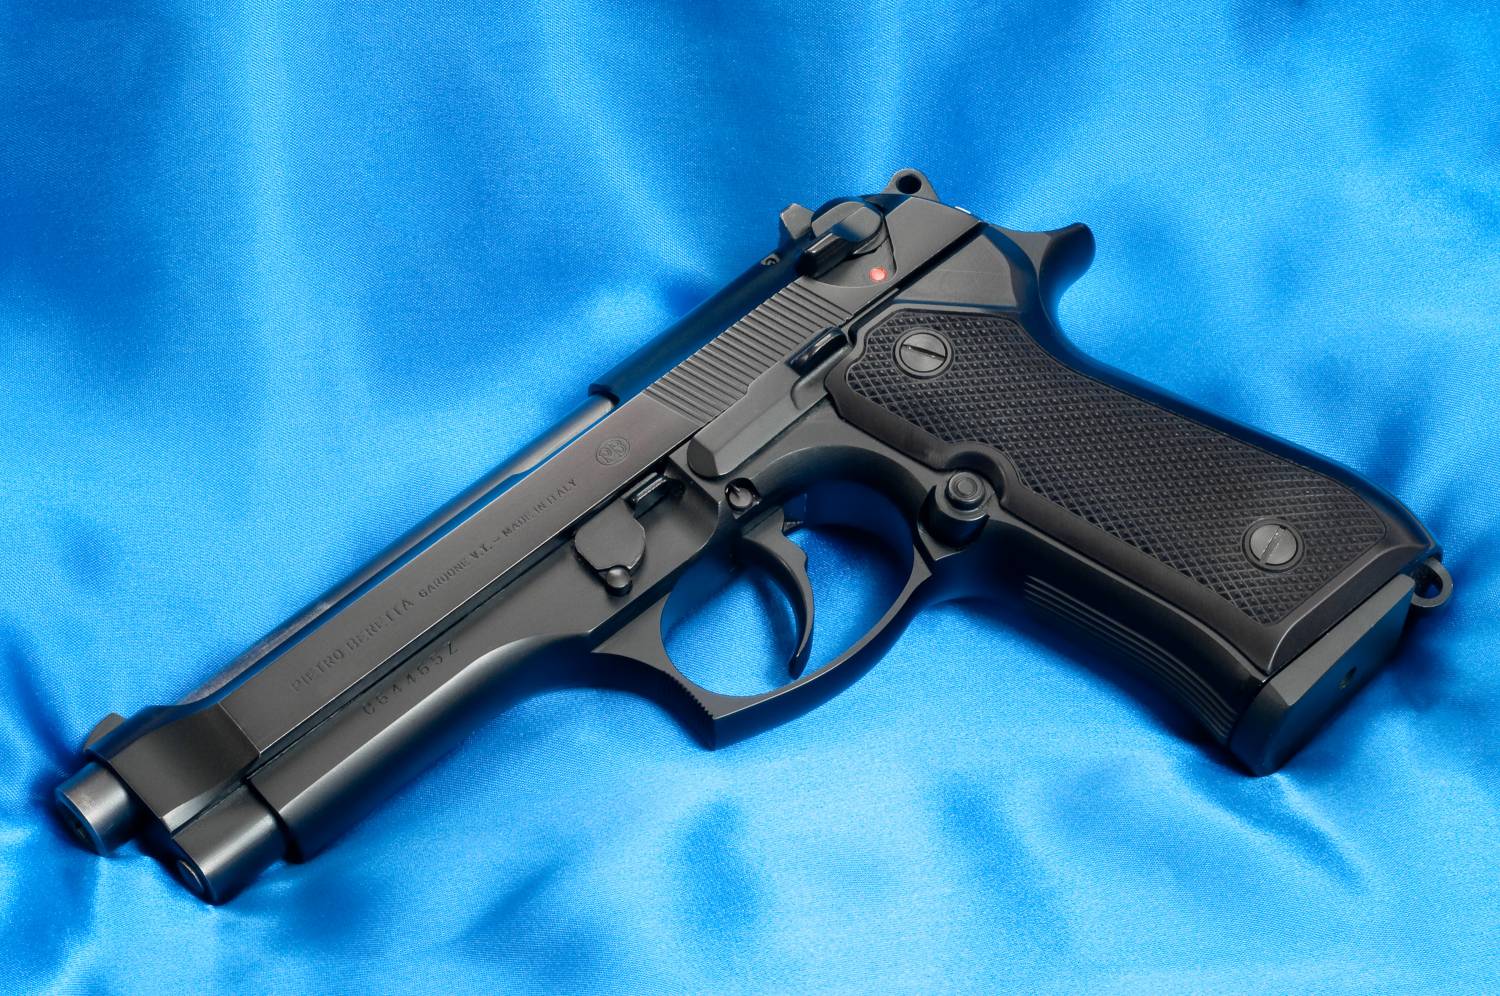 Beretta 92F chambered in 9 mm.